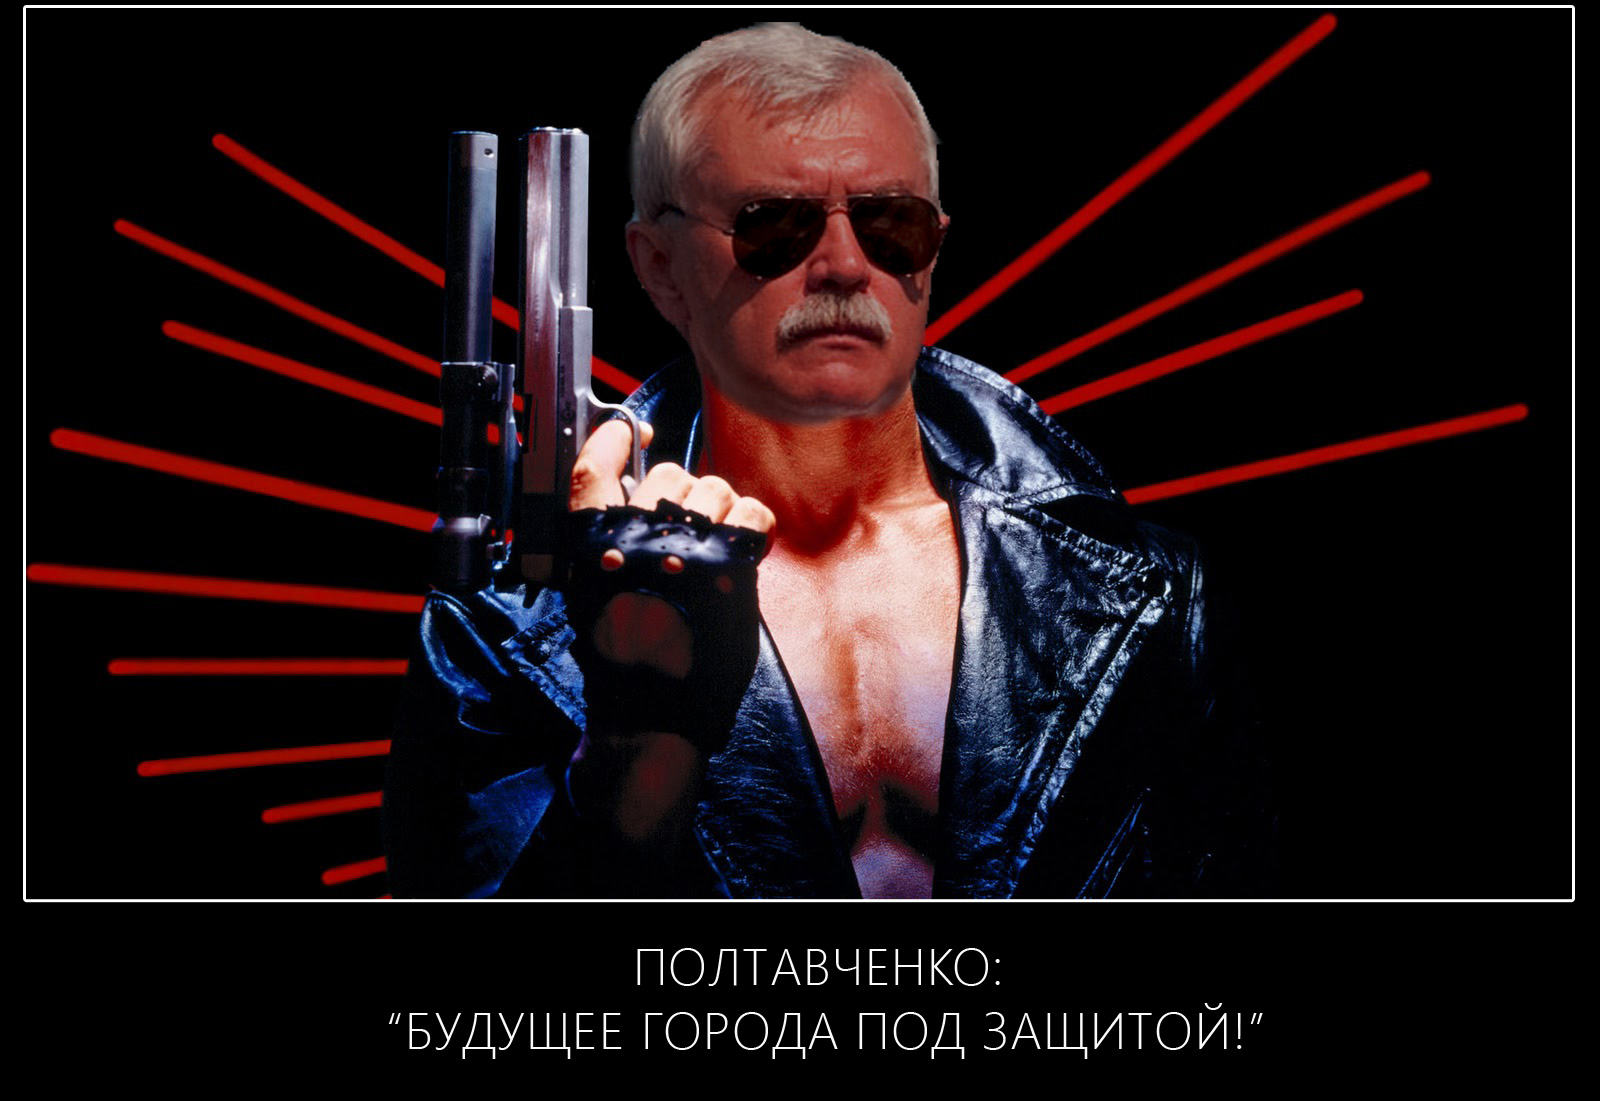 ПОлтавченко!да придет спаситель!